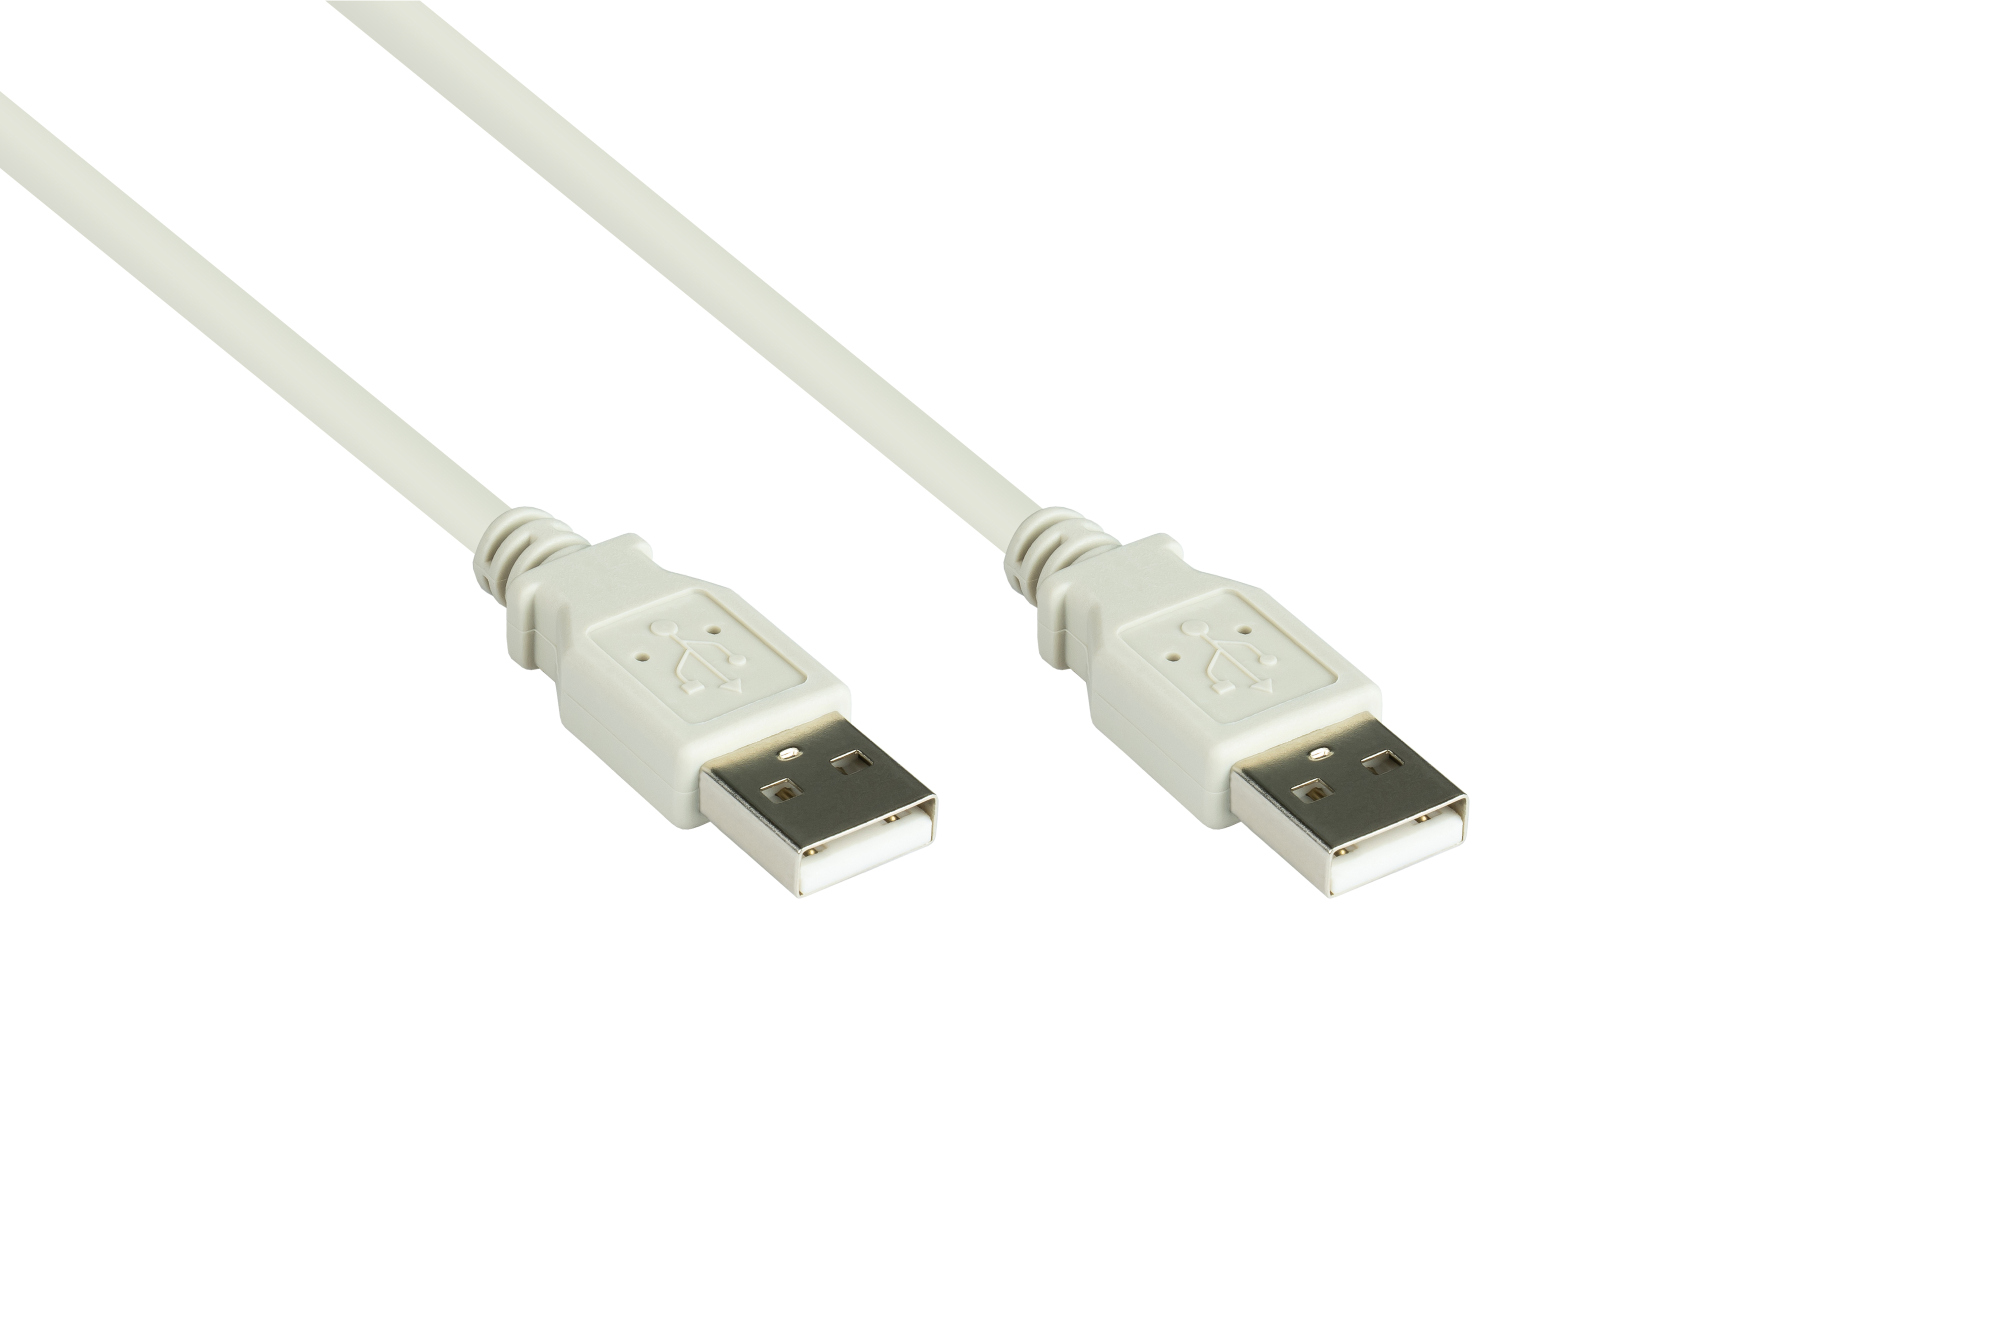 Anschlusskabel USB 2.0 Stecker A an Stecker A, grau, 3m